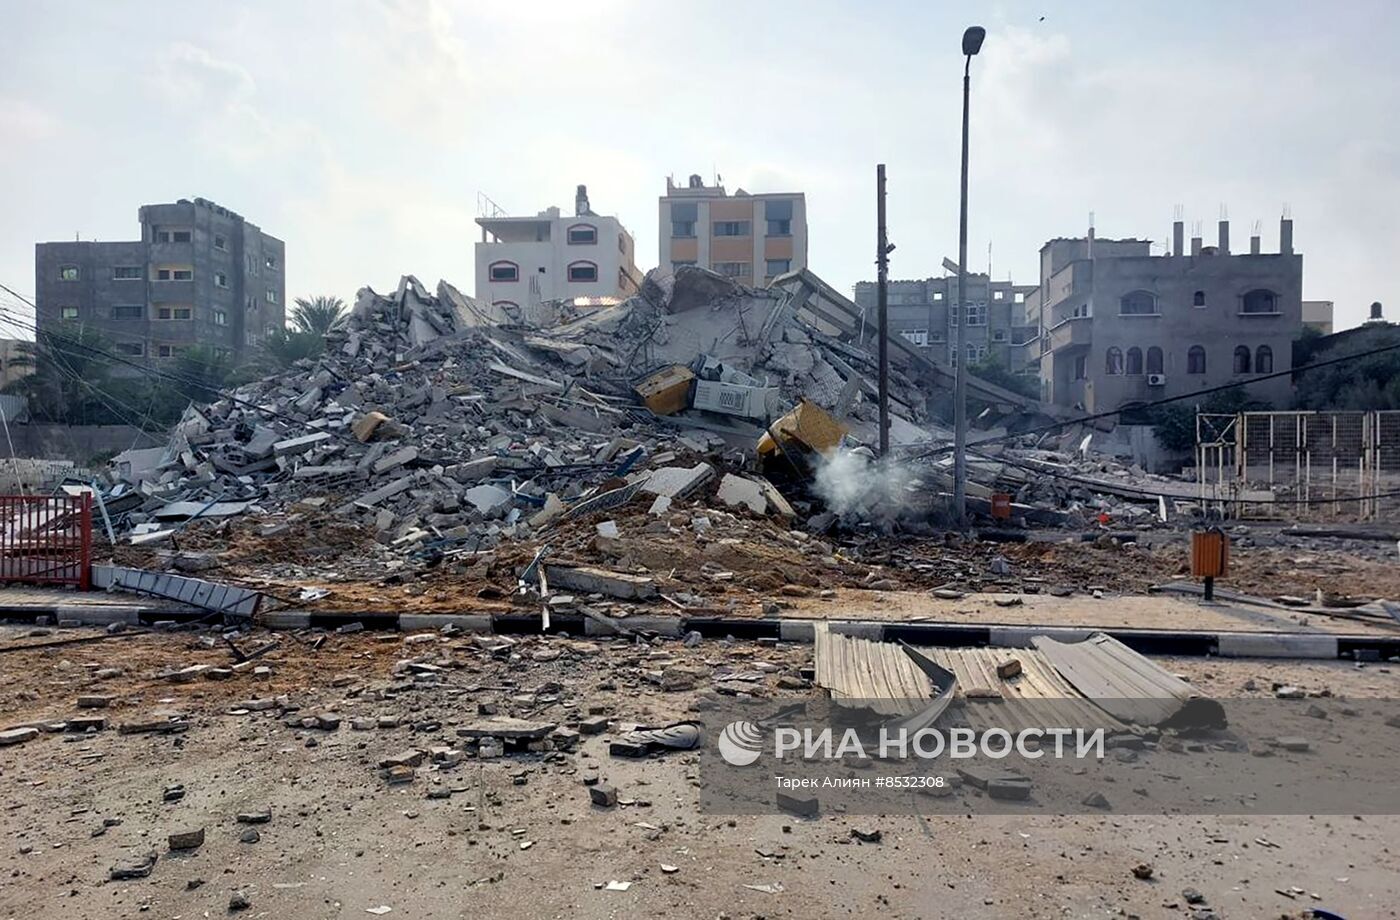 الطيران الإسرائيلي يدمر عددا من المباني في غزة على رؤوس ساكنيها دون سابق إنذار